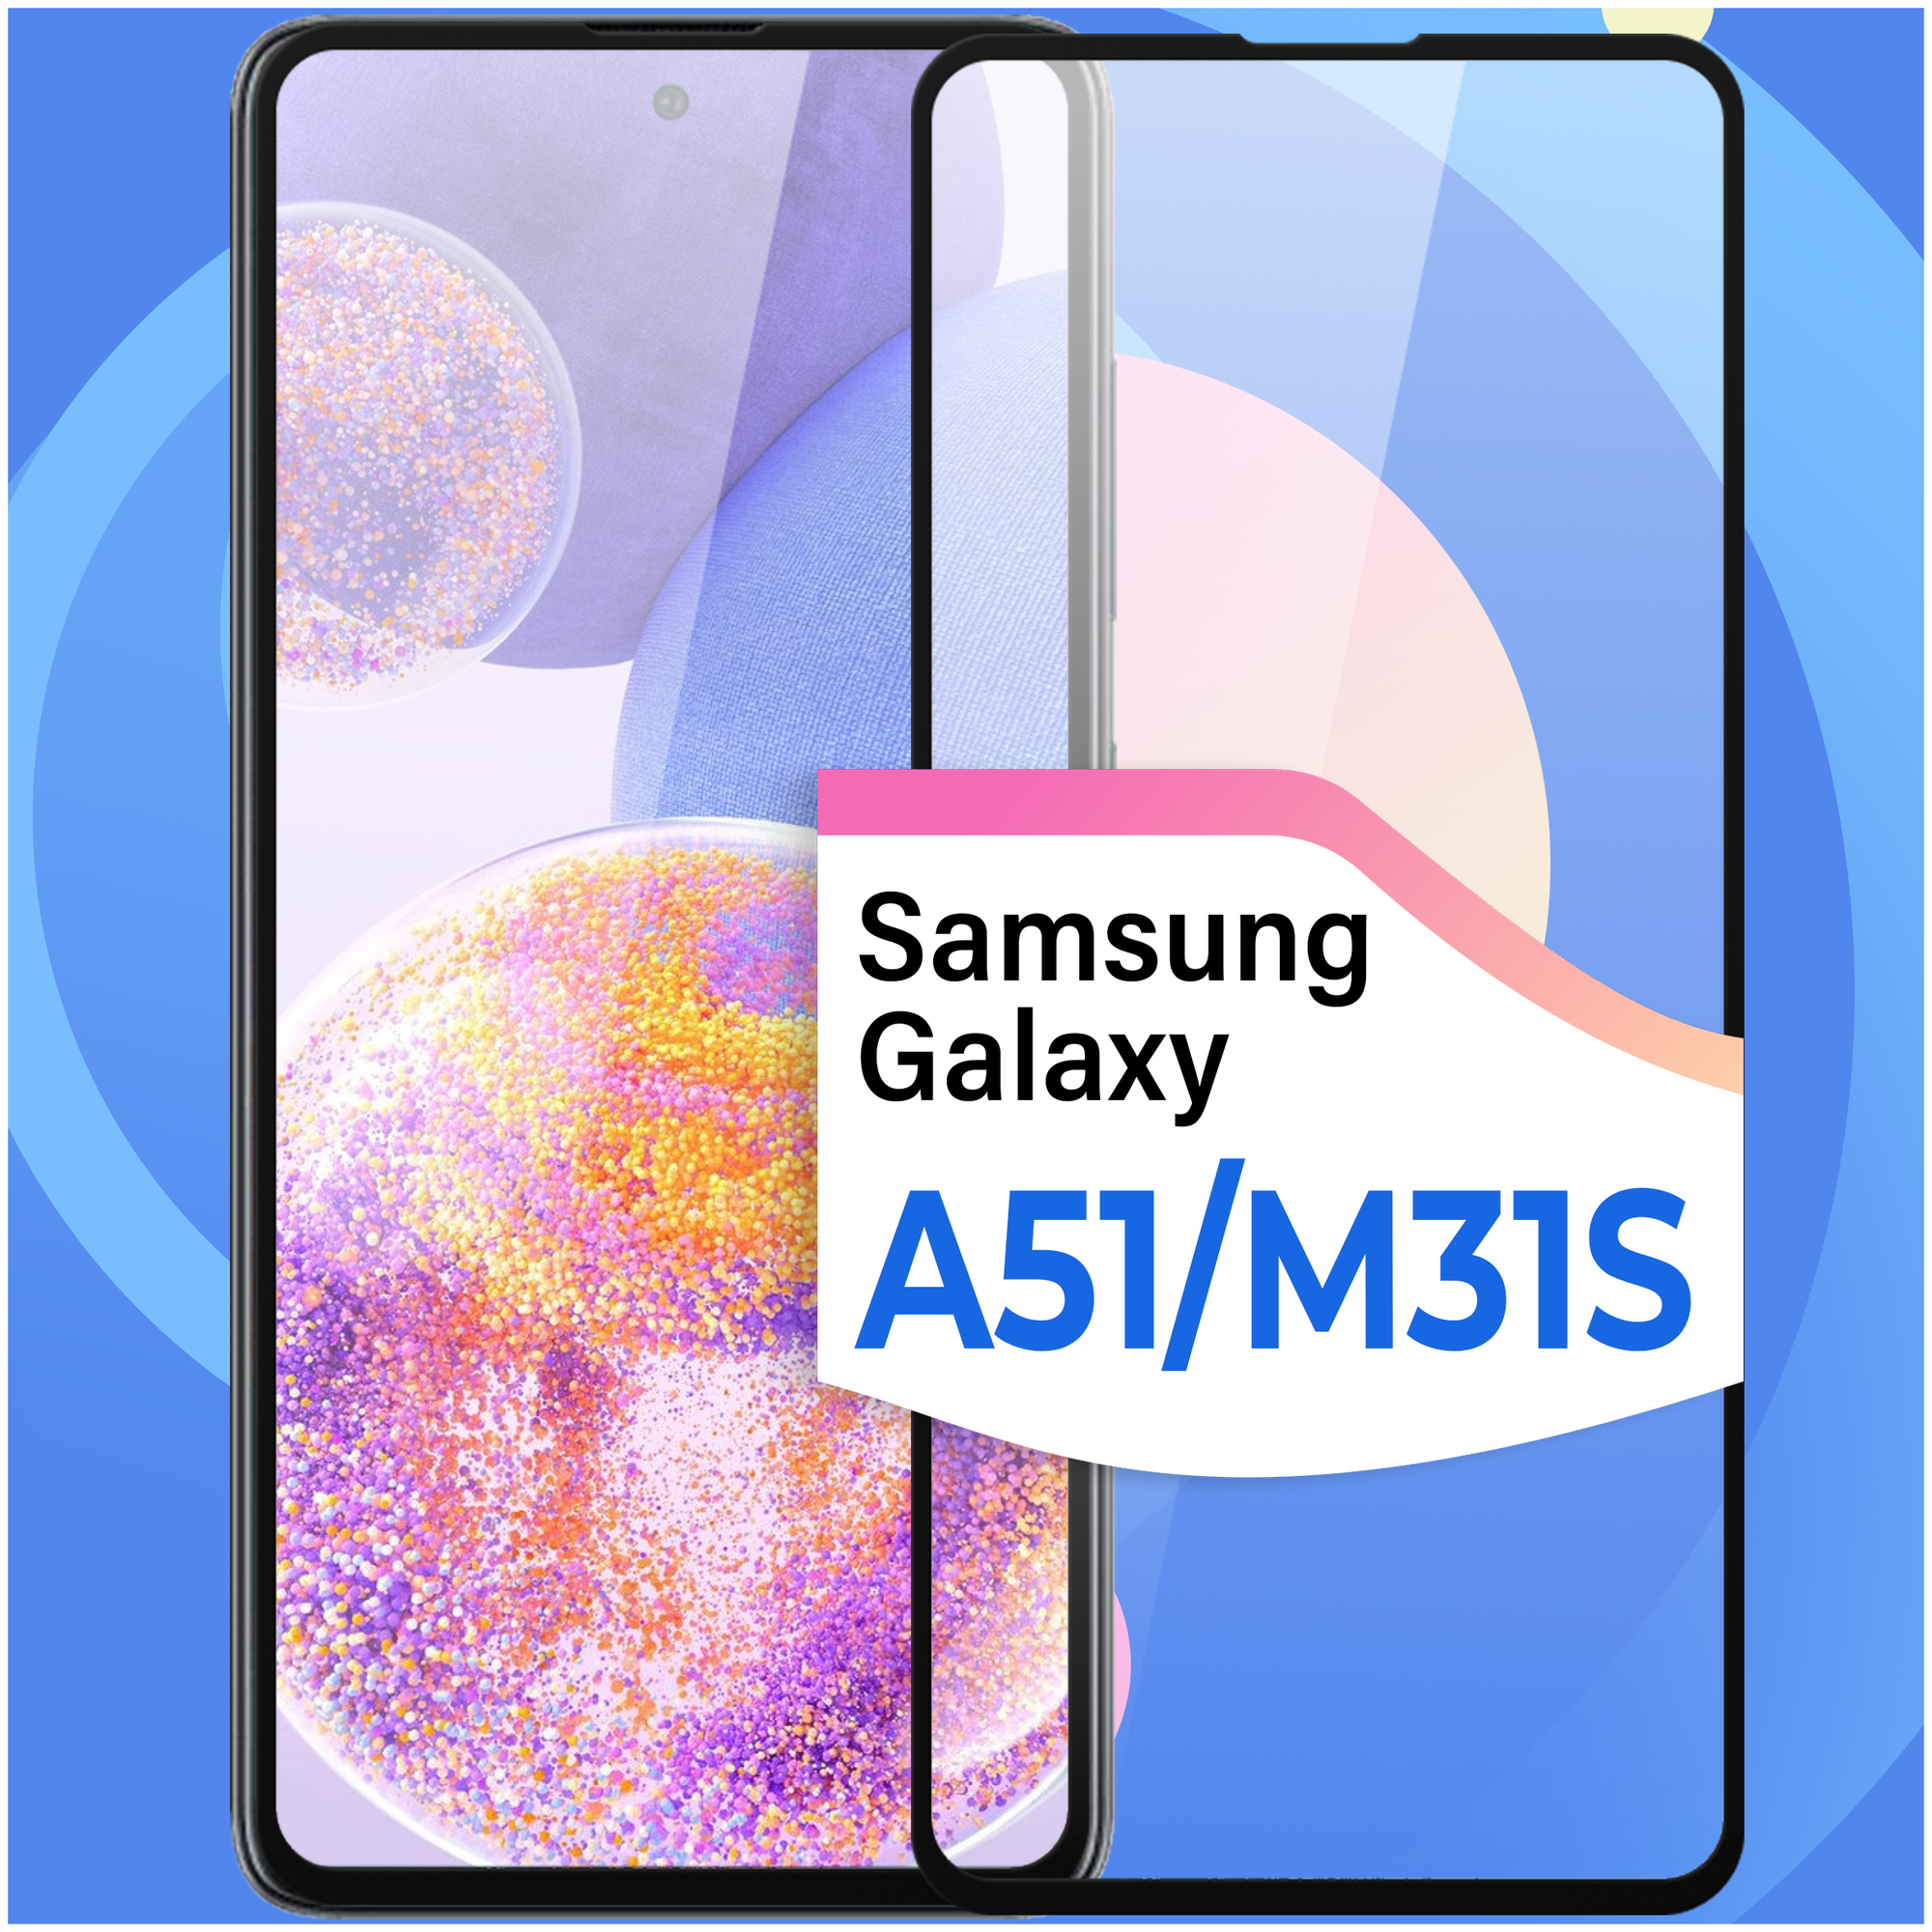 Противоударное стекло для смартфона Samsung Galaxy A51 и Samsung Galaxy M31S / Защитное глянцевое стекло на телефон Самсунг Галакси А51 и М31С